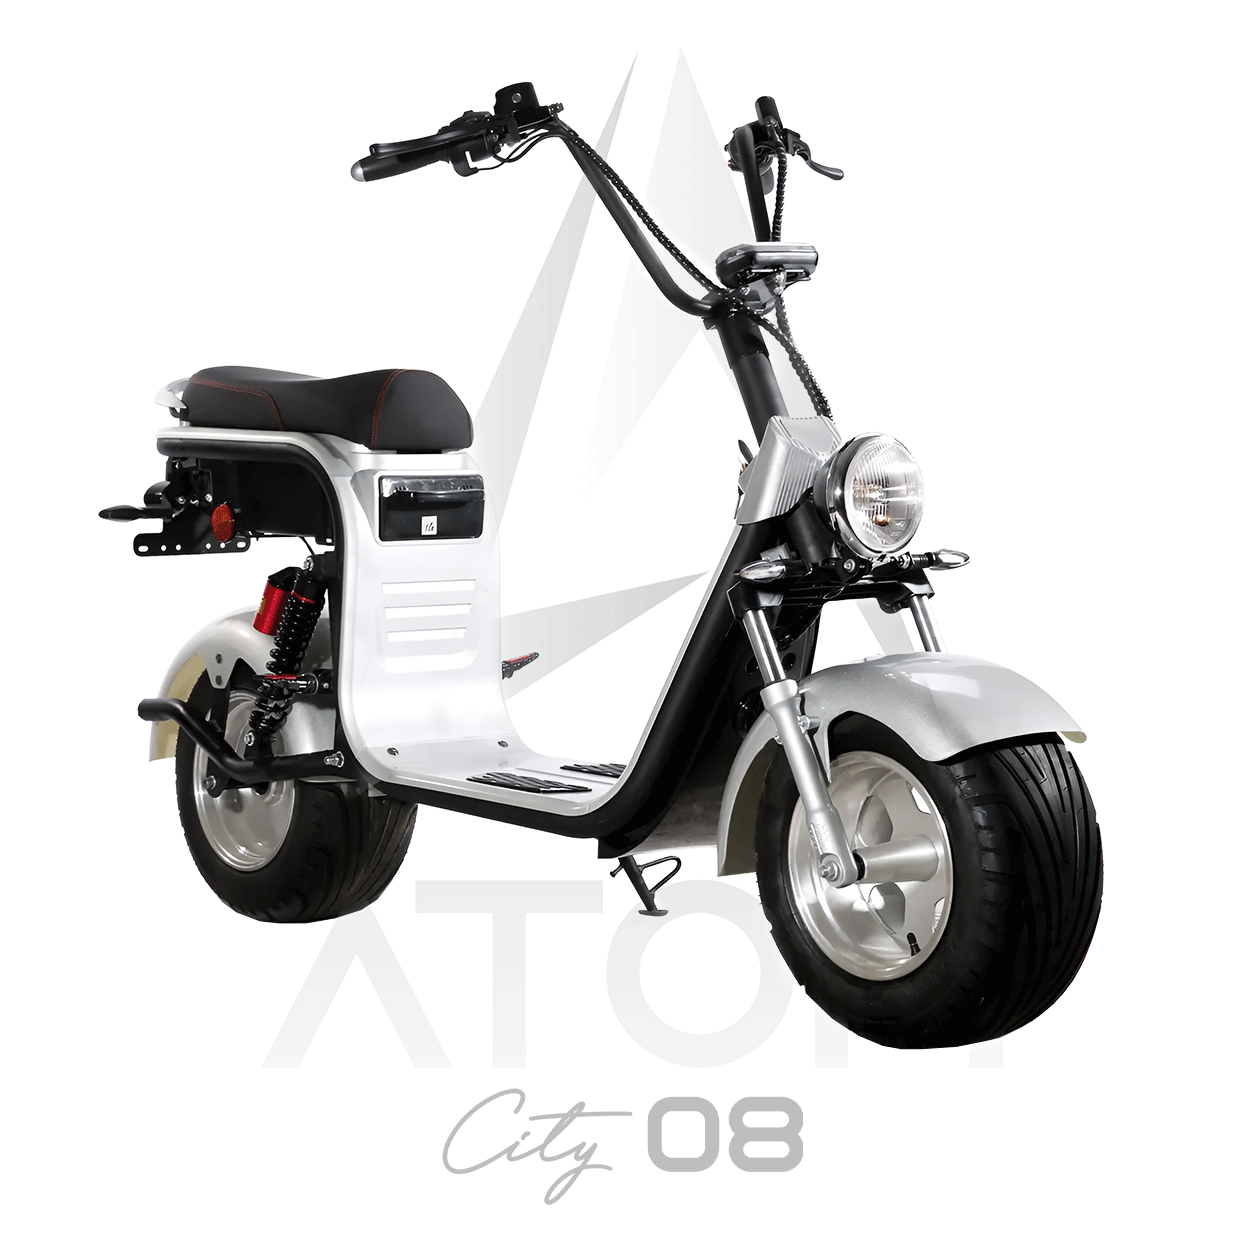 Scooter électrique, Atom City 08 | 2000 W | 50 cc - Atom Motors